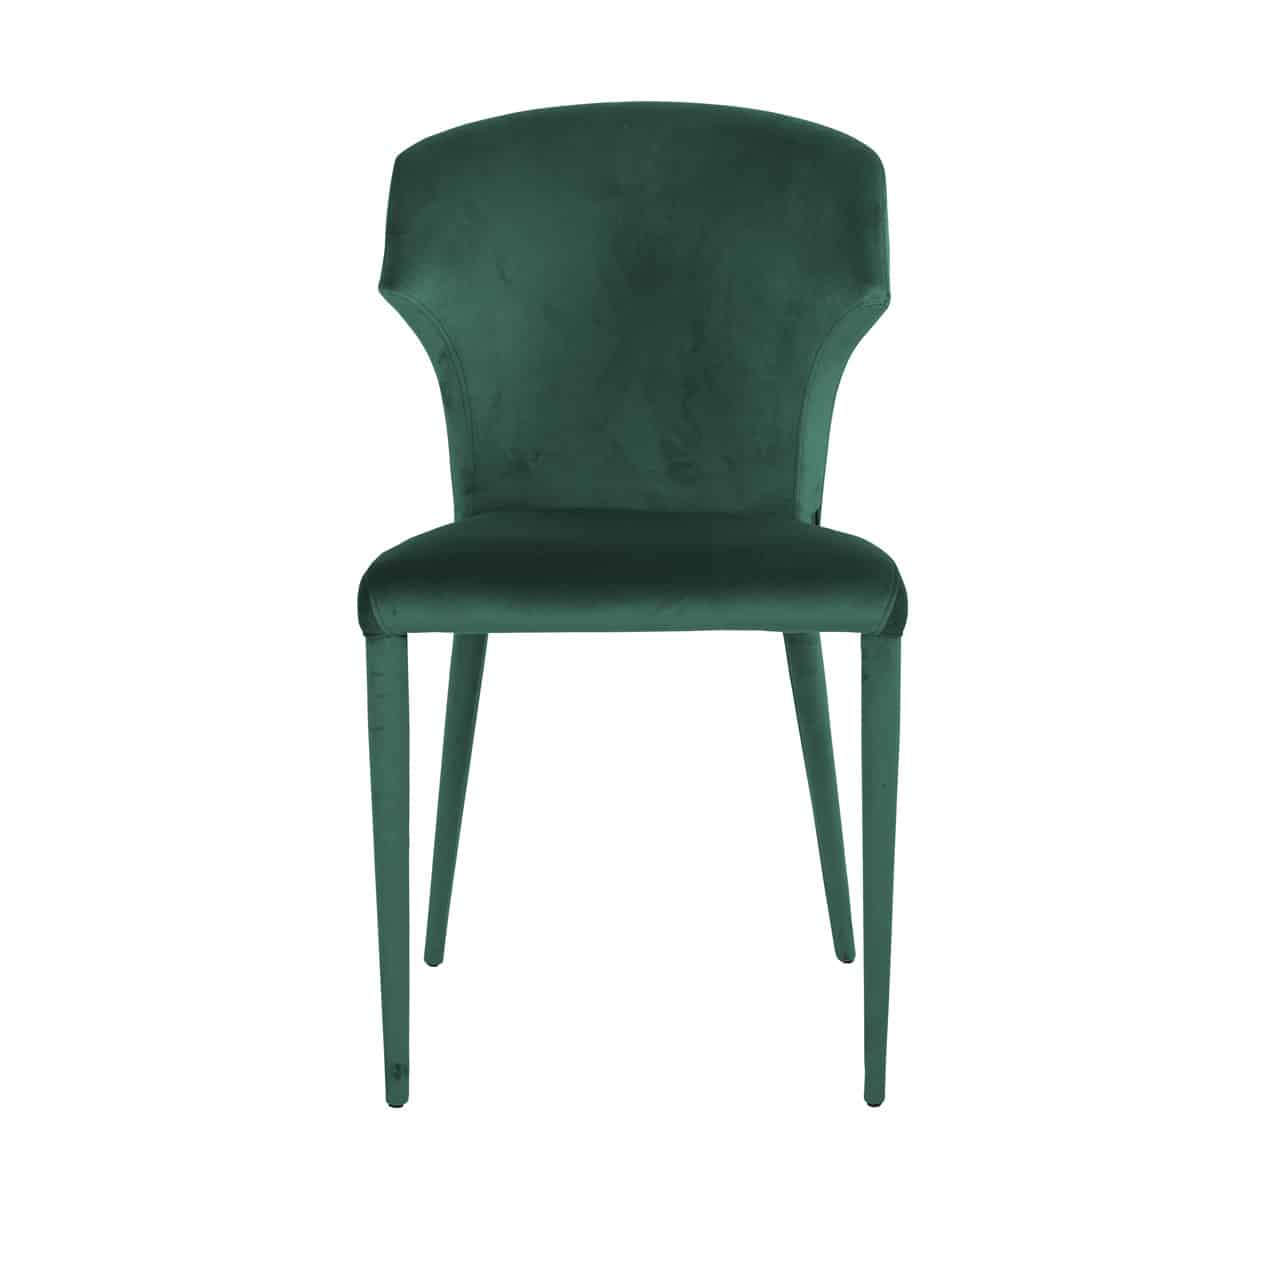 PIPER chair green